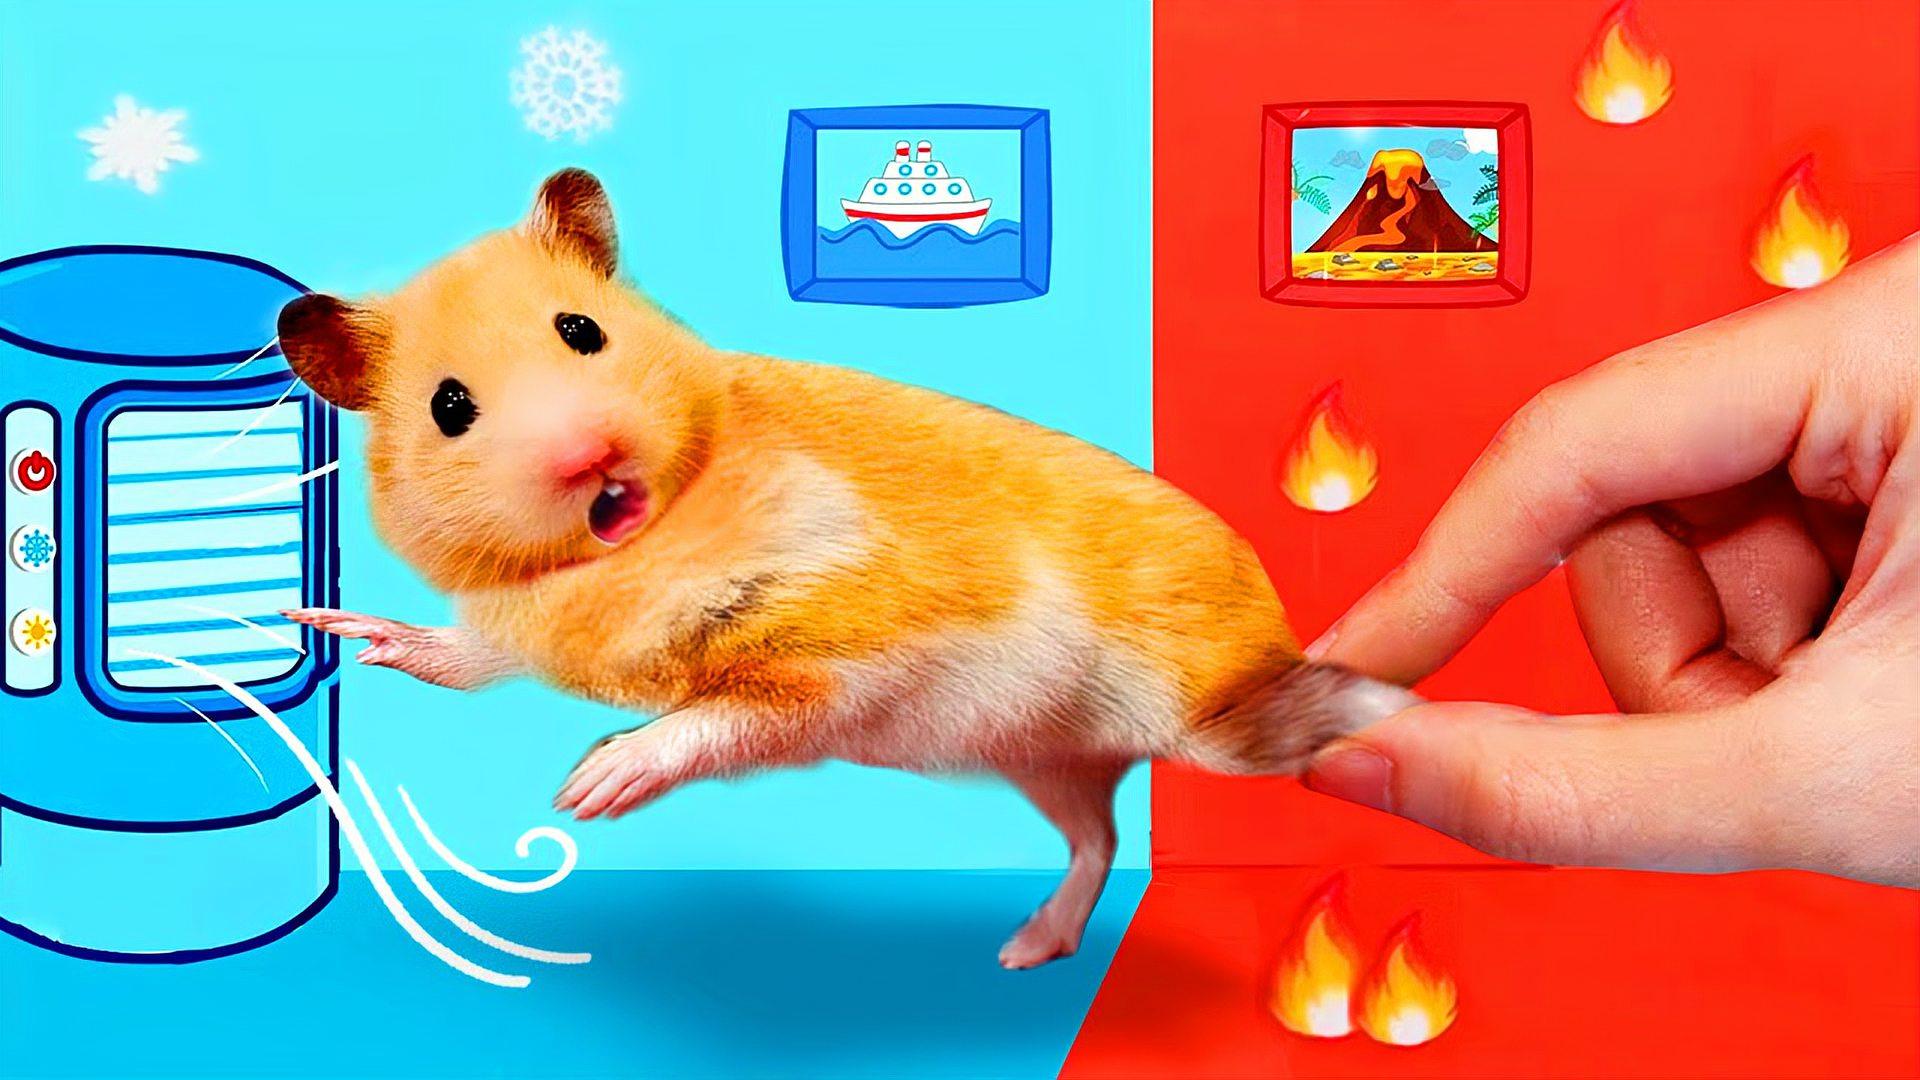 小仓鼠大冒险:打造冰与火的房间,仓鼠逃离冷热困境,能成功吗?